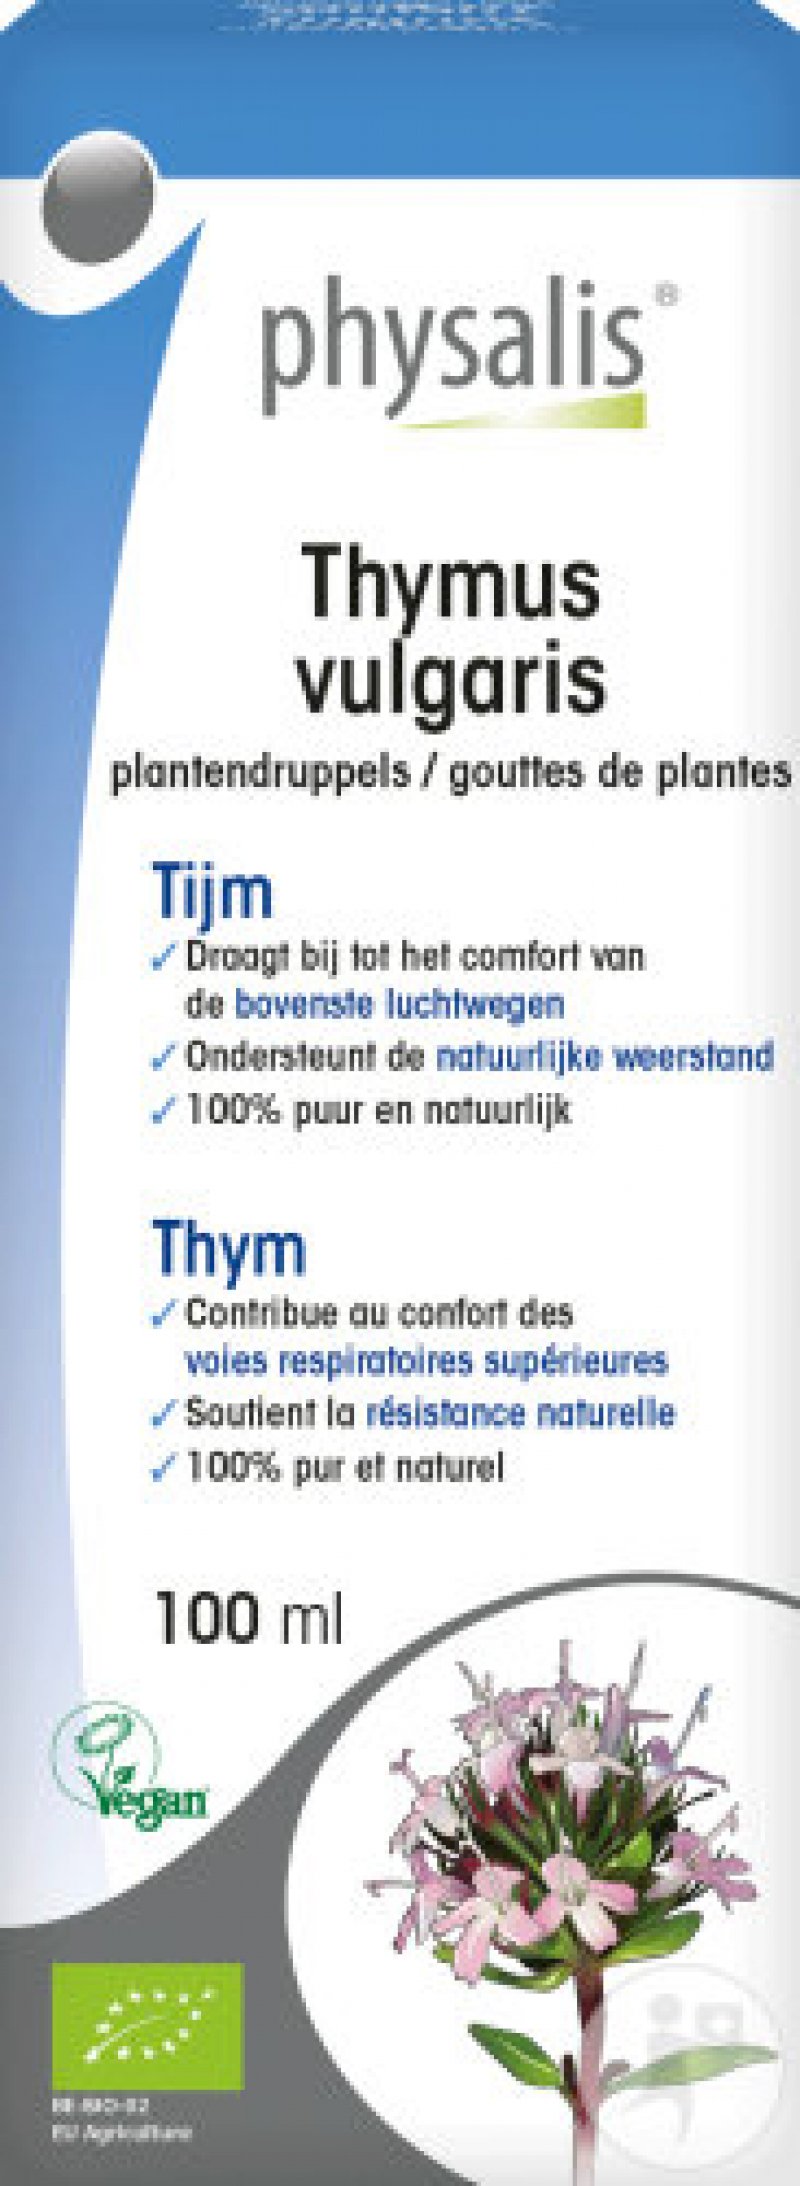 Thymus Vulgaris (Thijm) 100ml